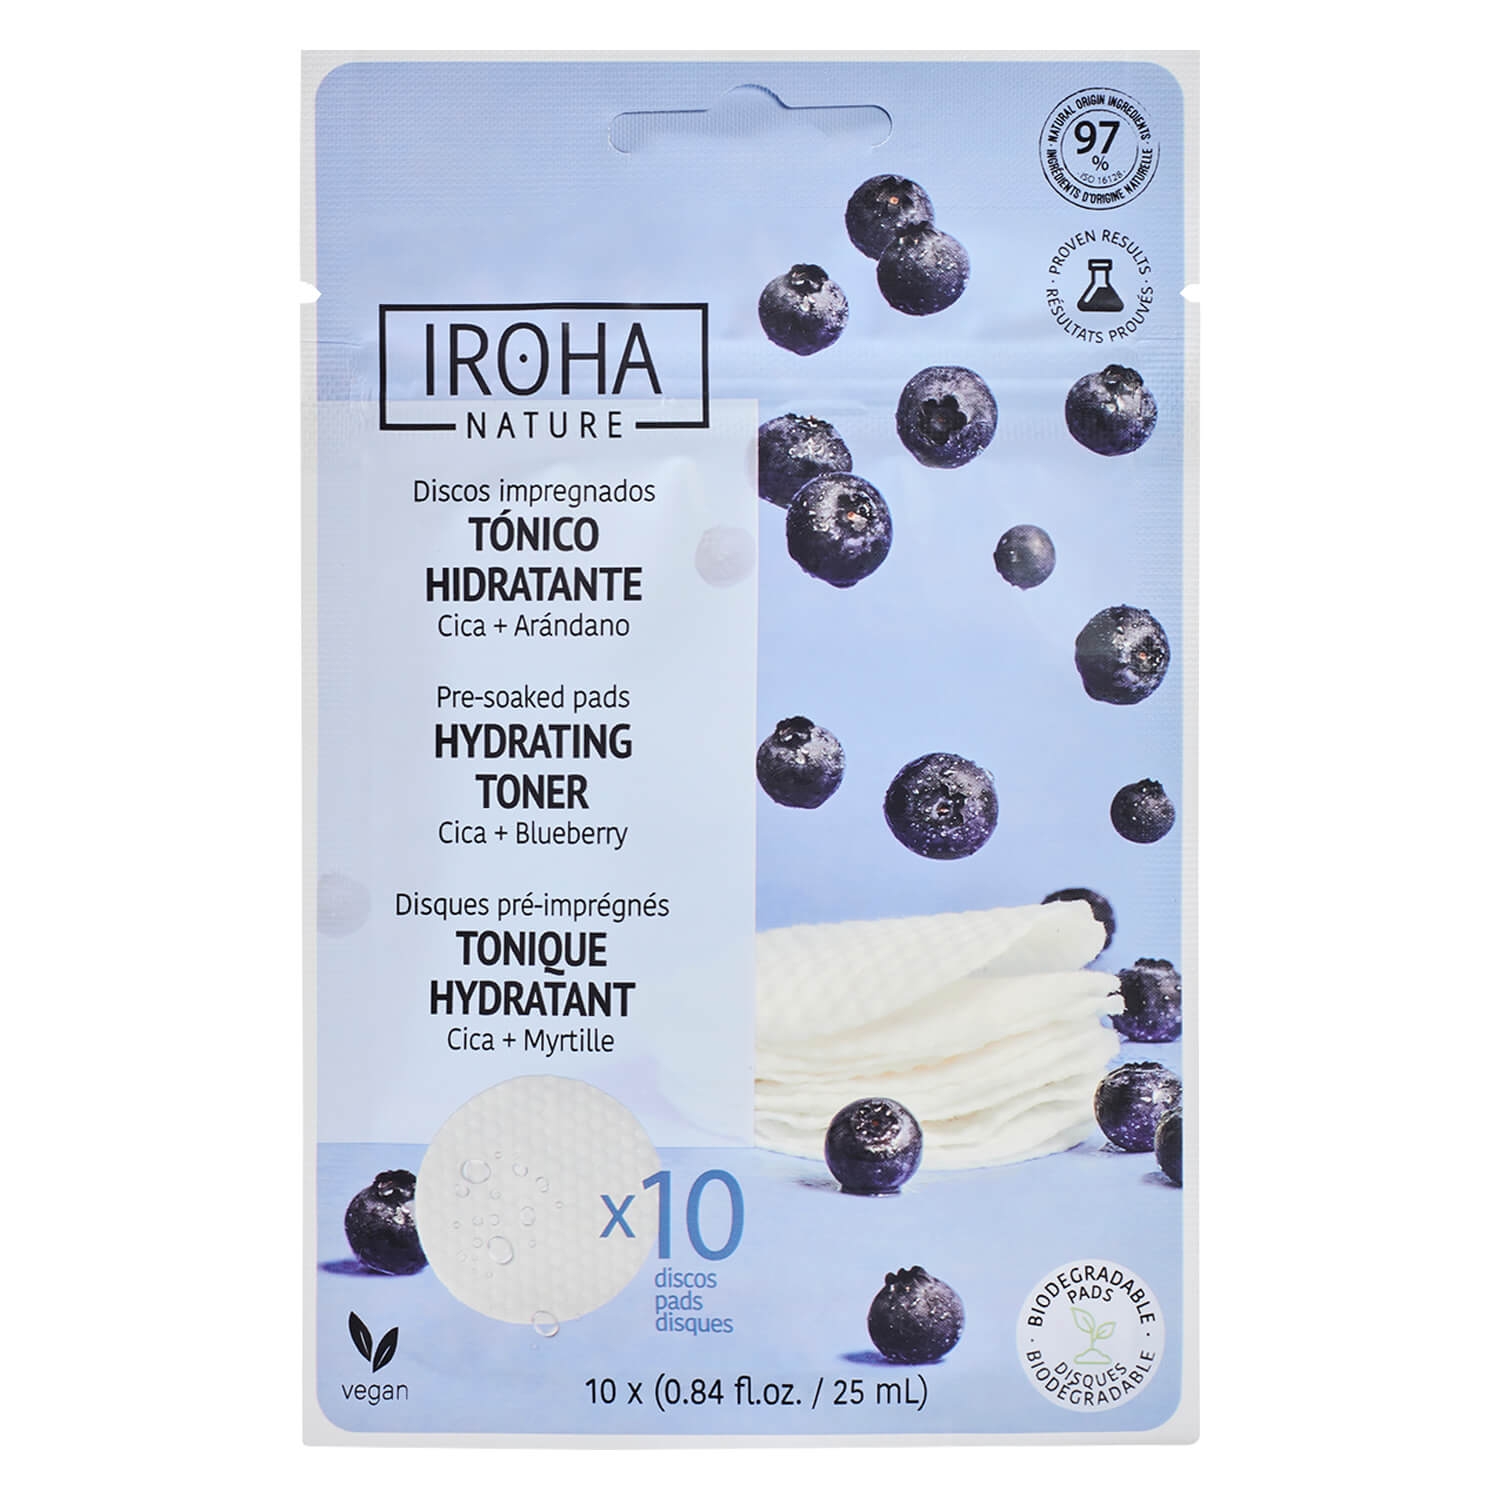 Produktbild von Iroha Nature - Hydrating Toner Pads